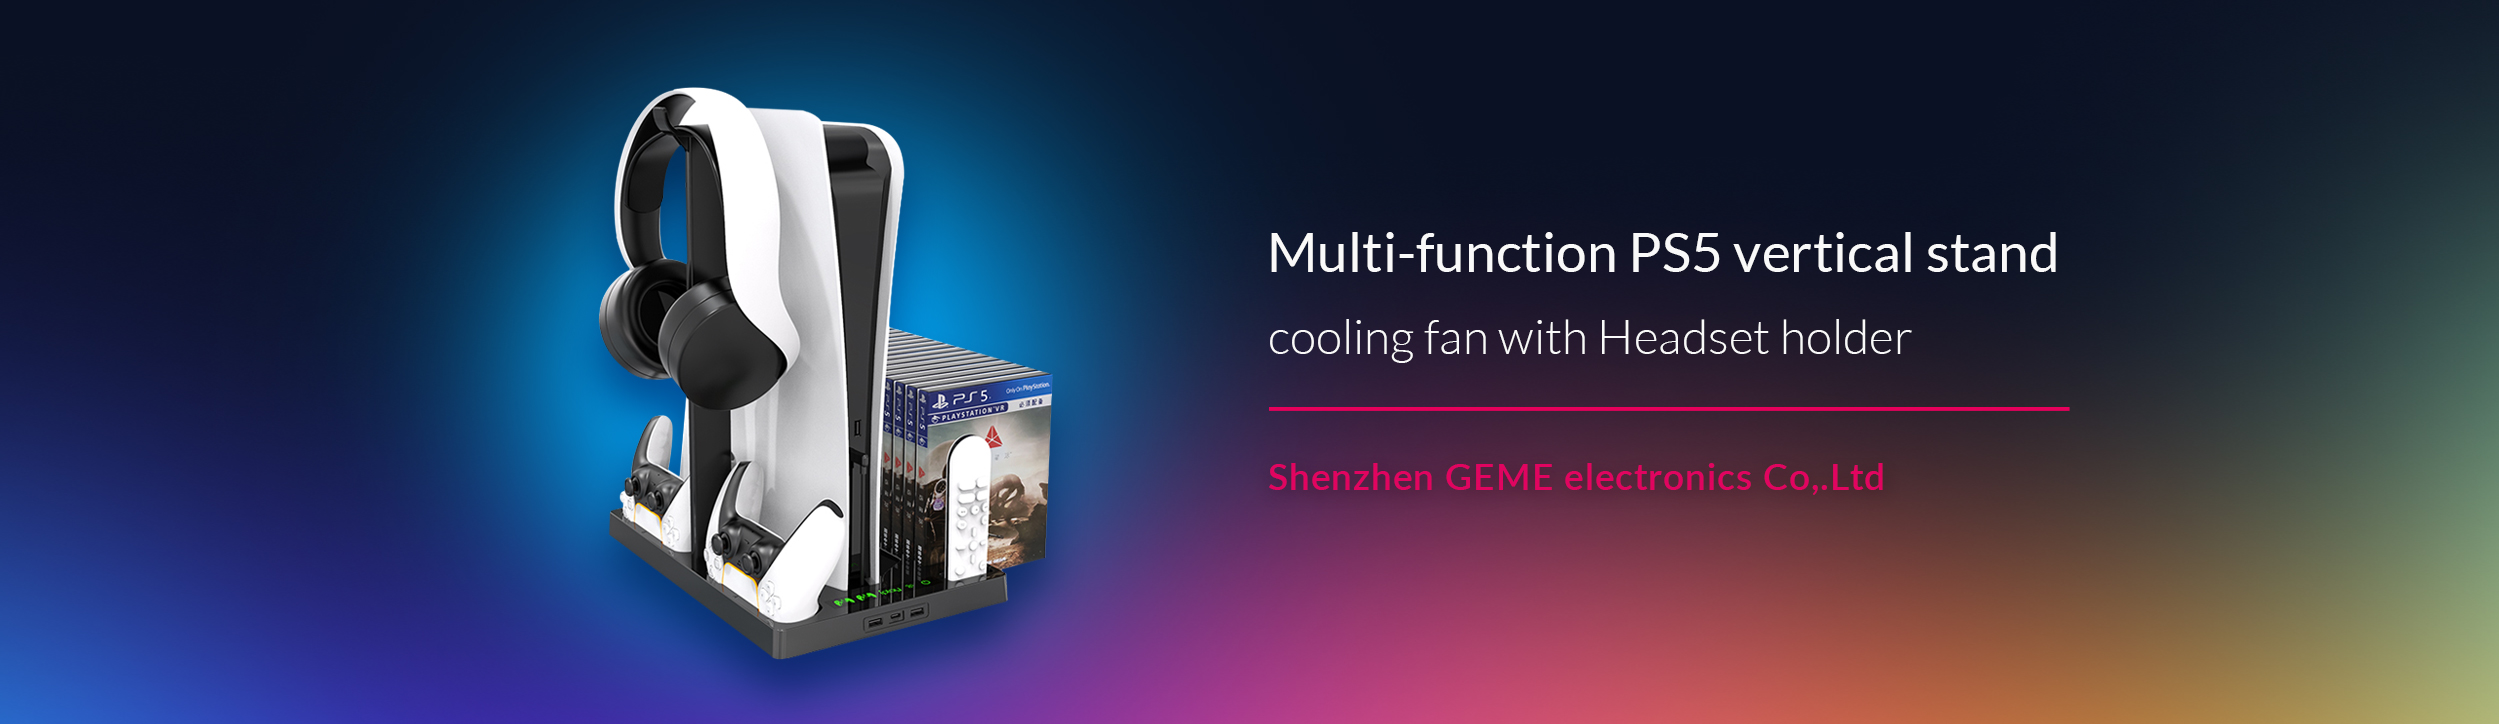 Shenzhen GEME  electronics Co,.Ltd